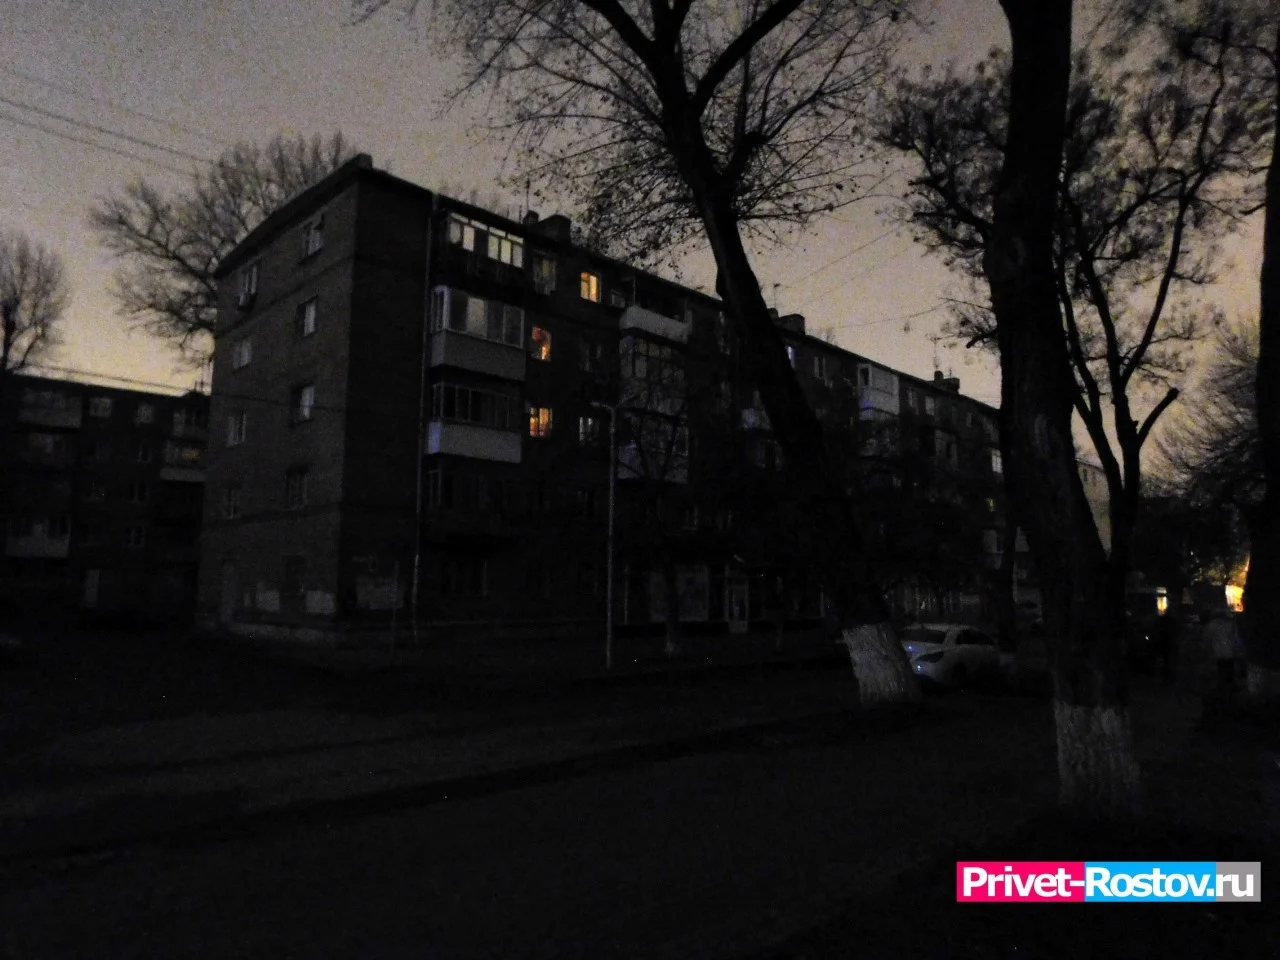 Звук взрыва напугал жителей Чкаловского в Ростове в ночь на 7 октября